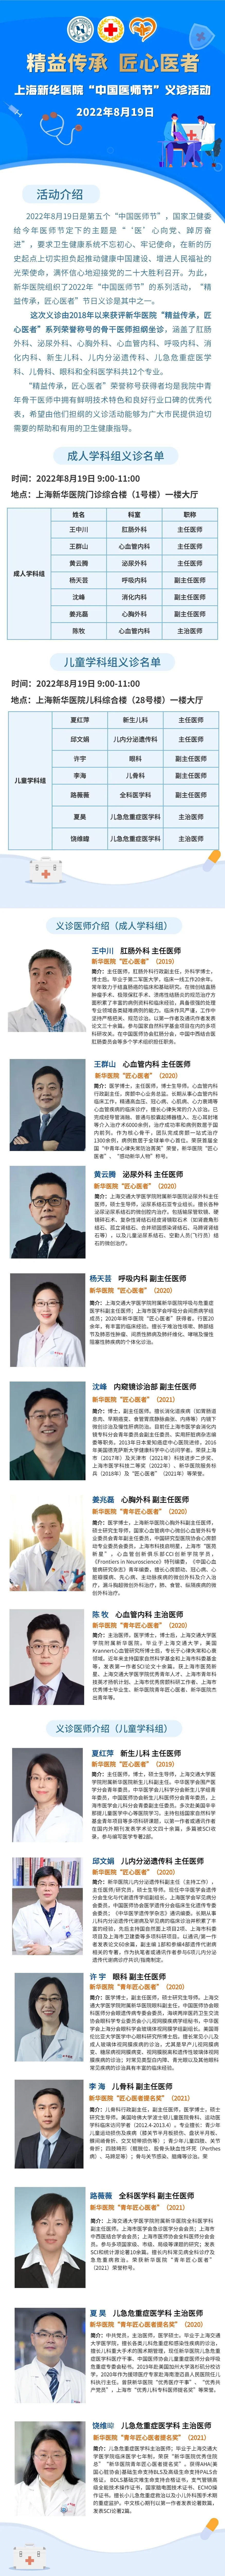 中国医师节 8月19日 新华医院获 匠心医者 荣誉的专家组团义诊 上观新闻